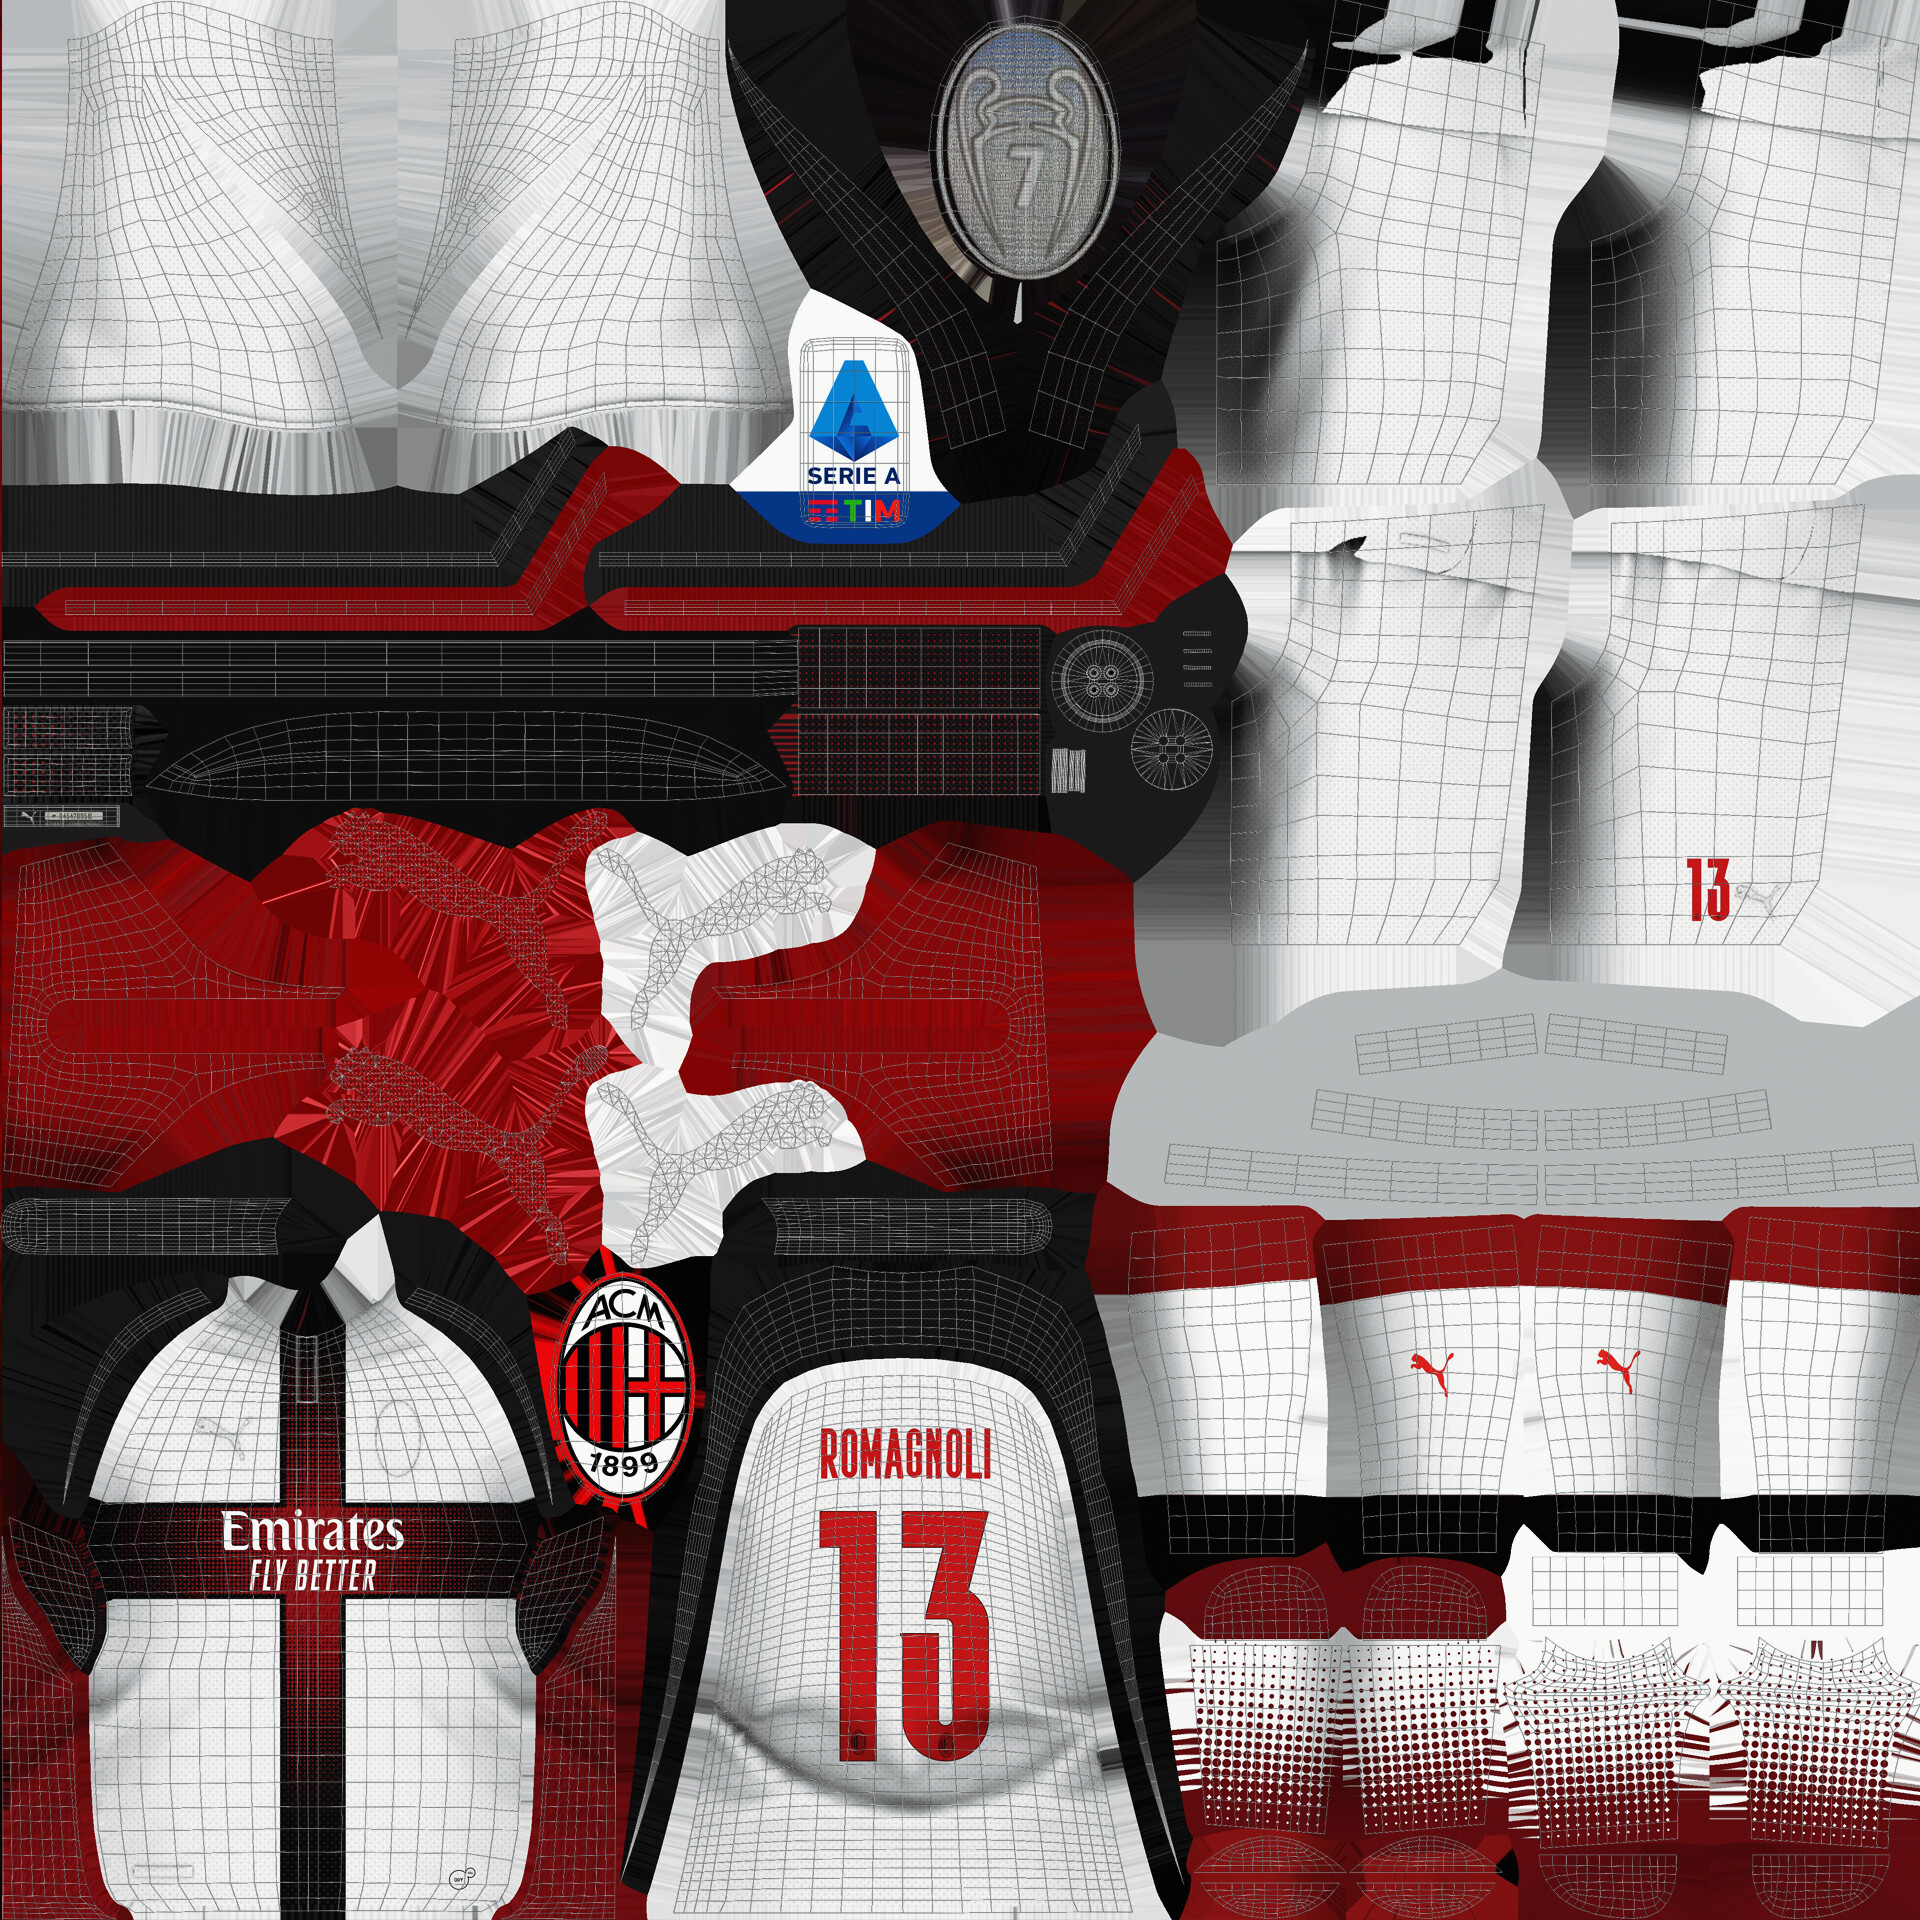 ac milan jersey 2021 - 2022 3D Model in Sports Equipment 3DExport